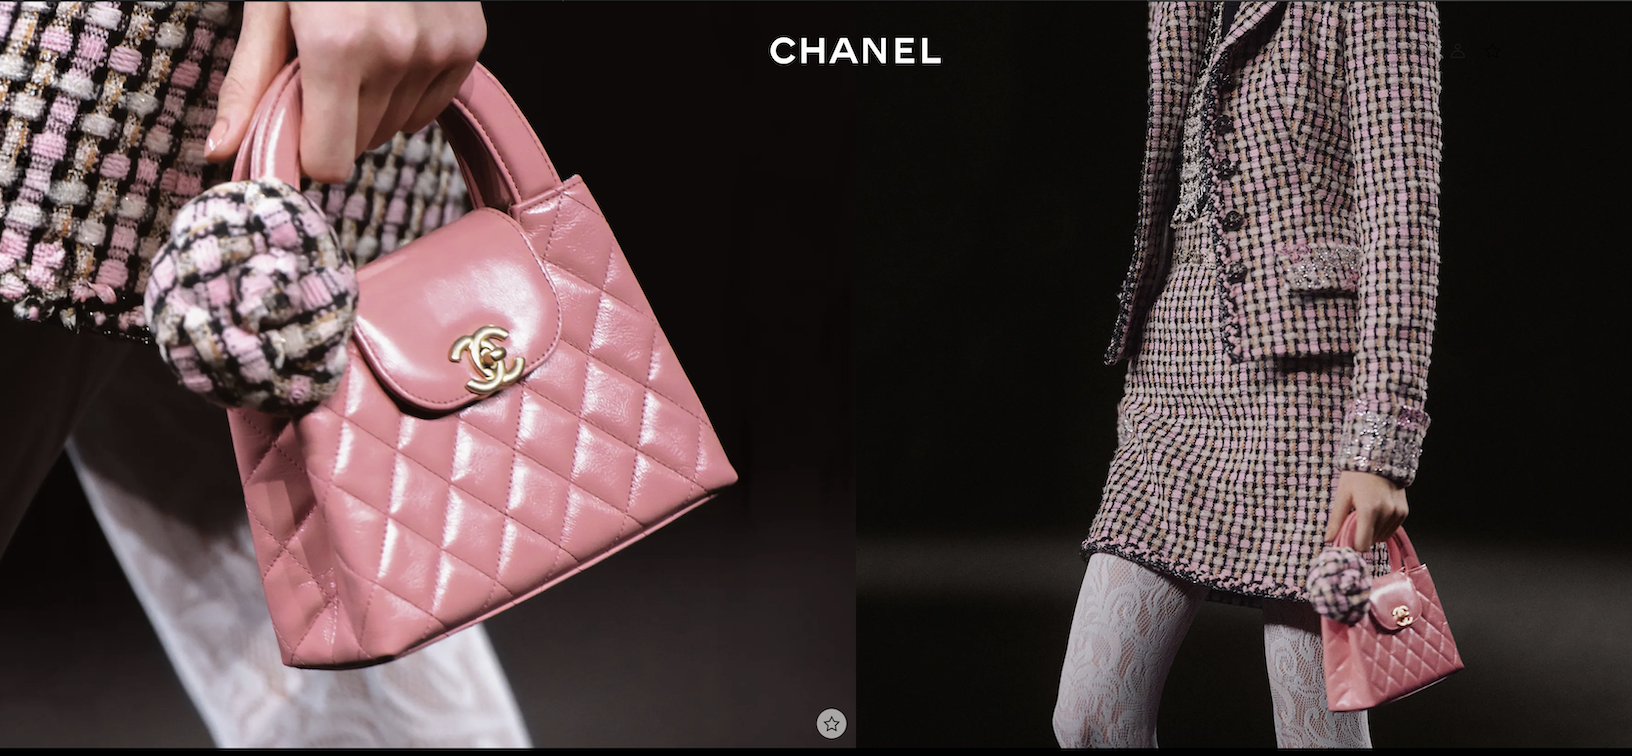 强化“意大利制造”，Chanel 收购意大利皮具生产商 Mabi 所有股权